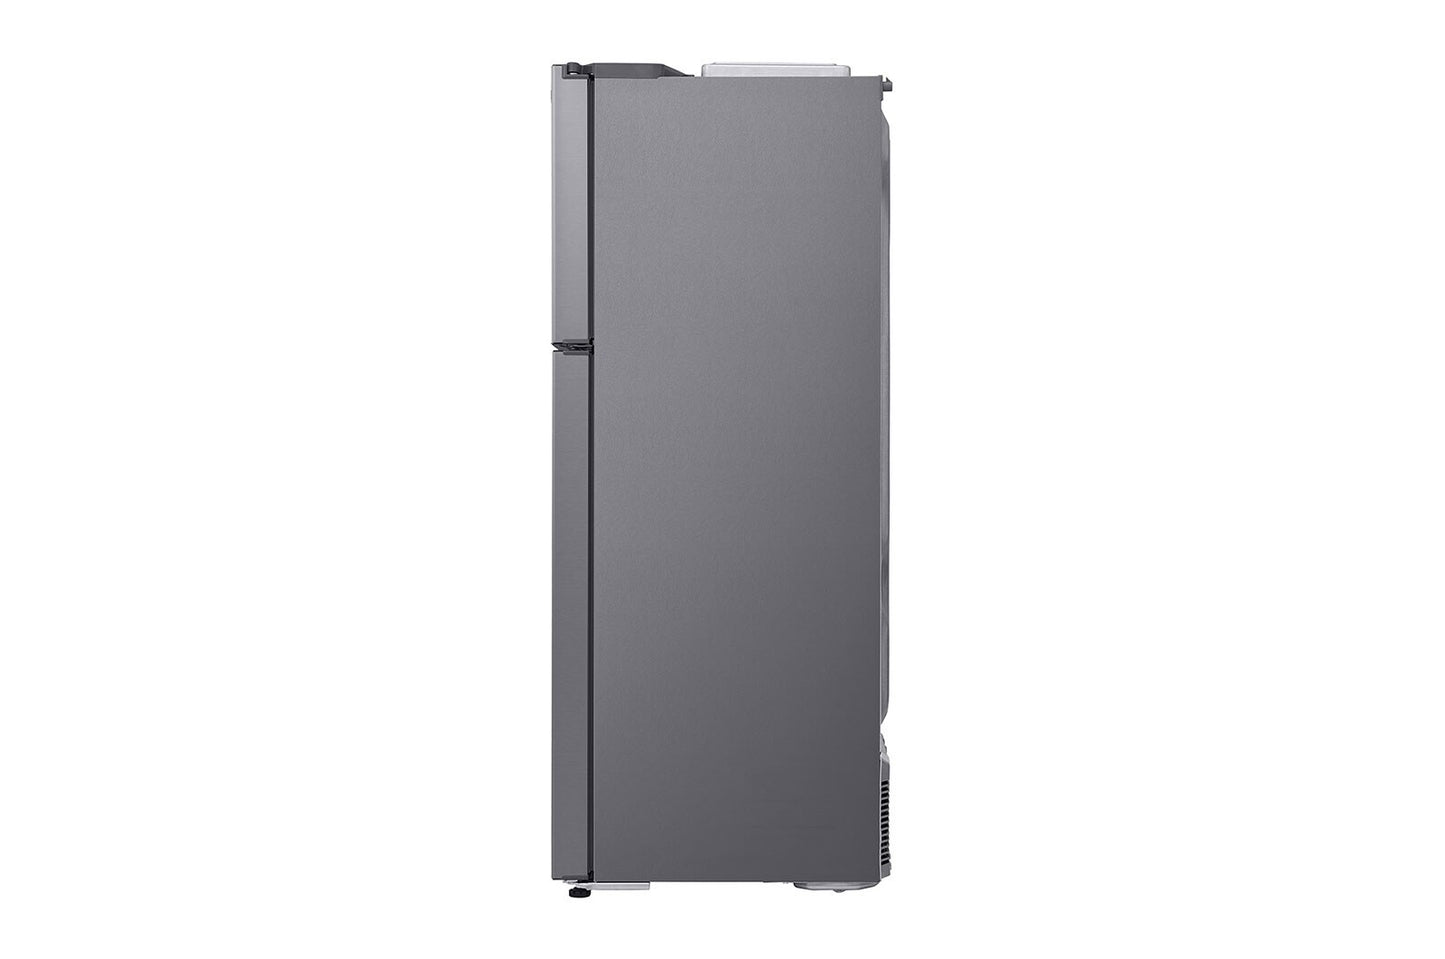 LG GL-H502HLHN 471L Top Freezer Inverter Refrigerator - REF 502 HLHN-H